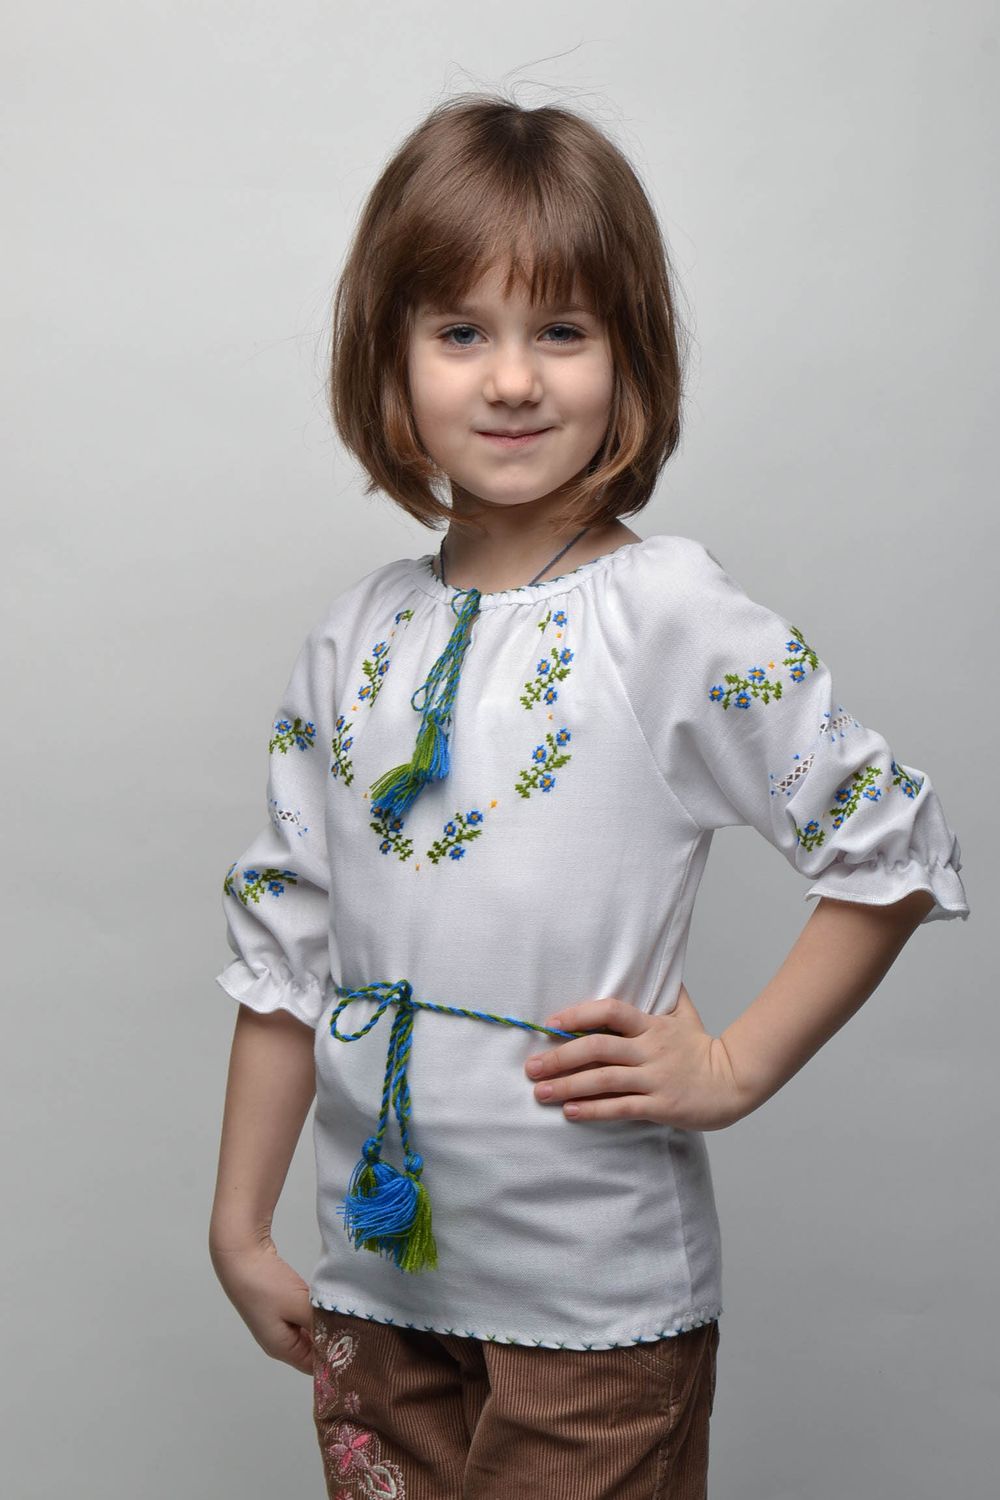 Camisa étnica bordada para niña de 5-7 años de edad foto 1